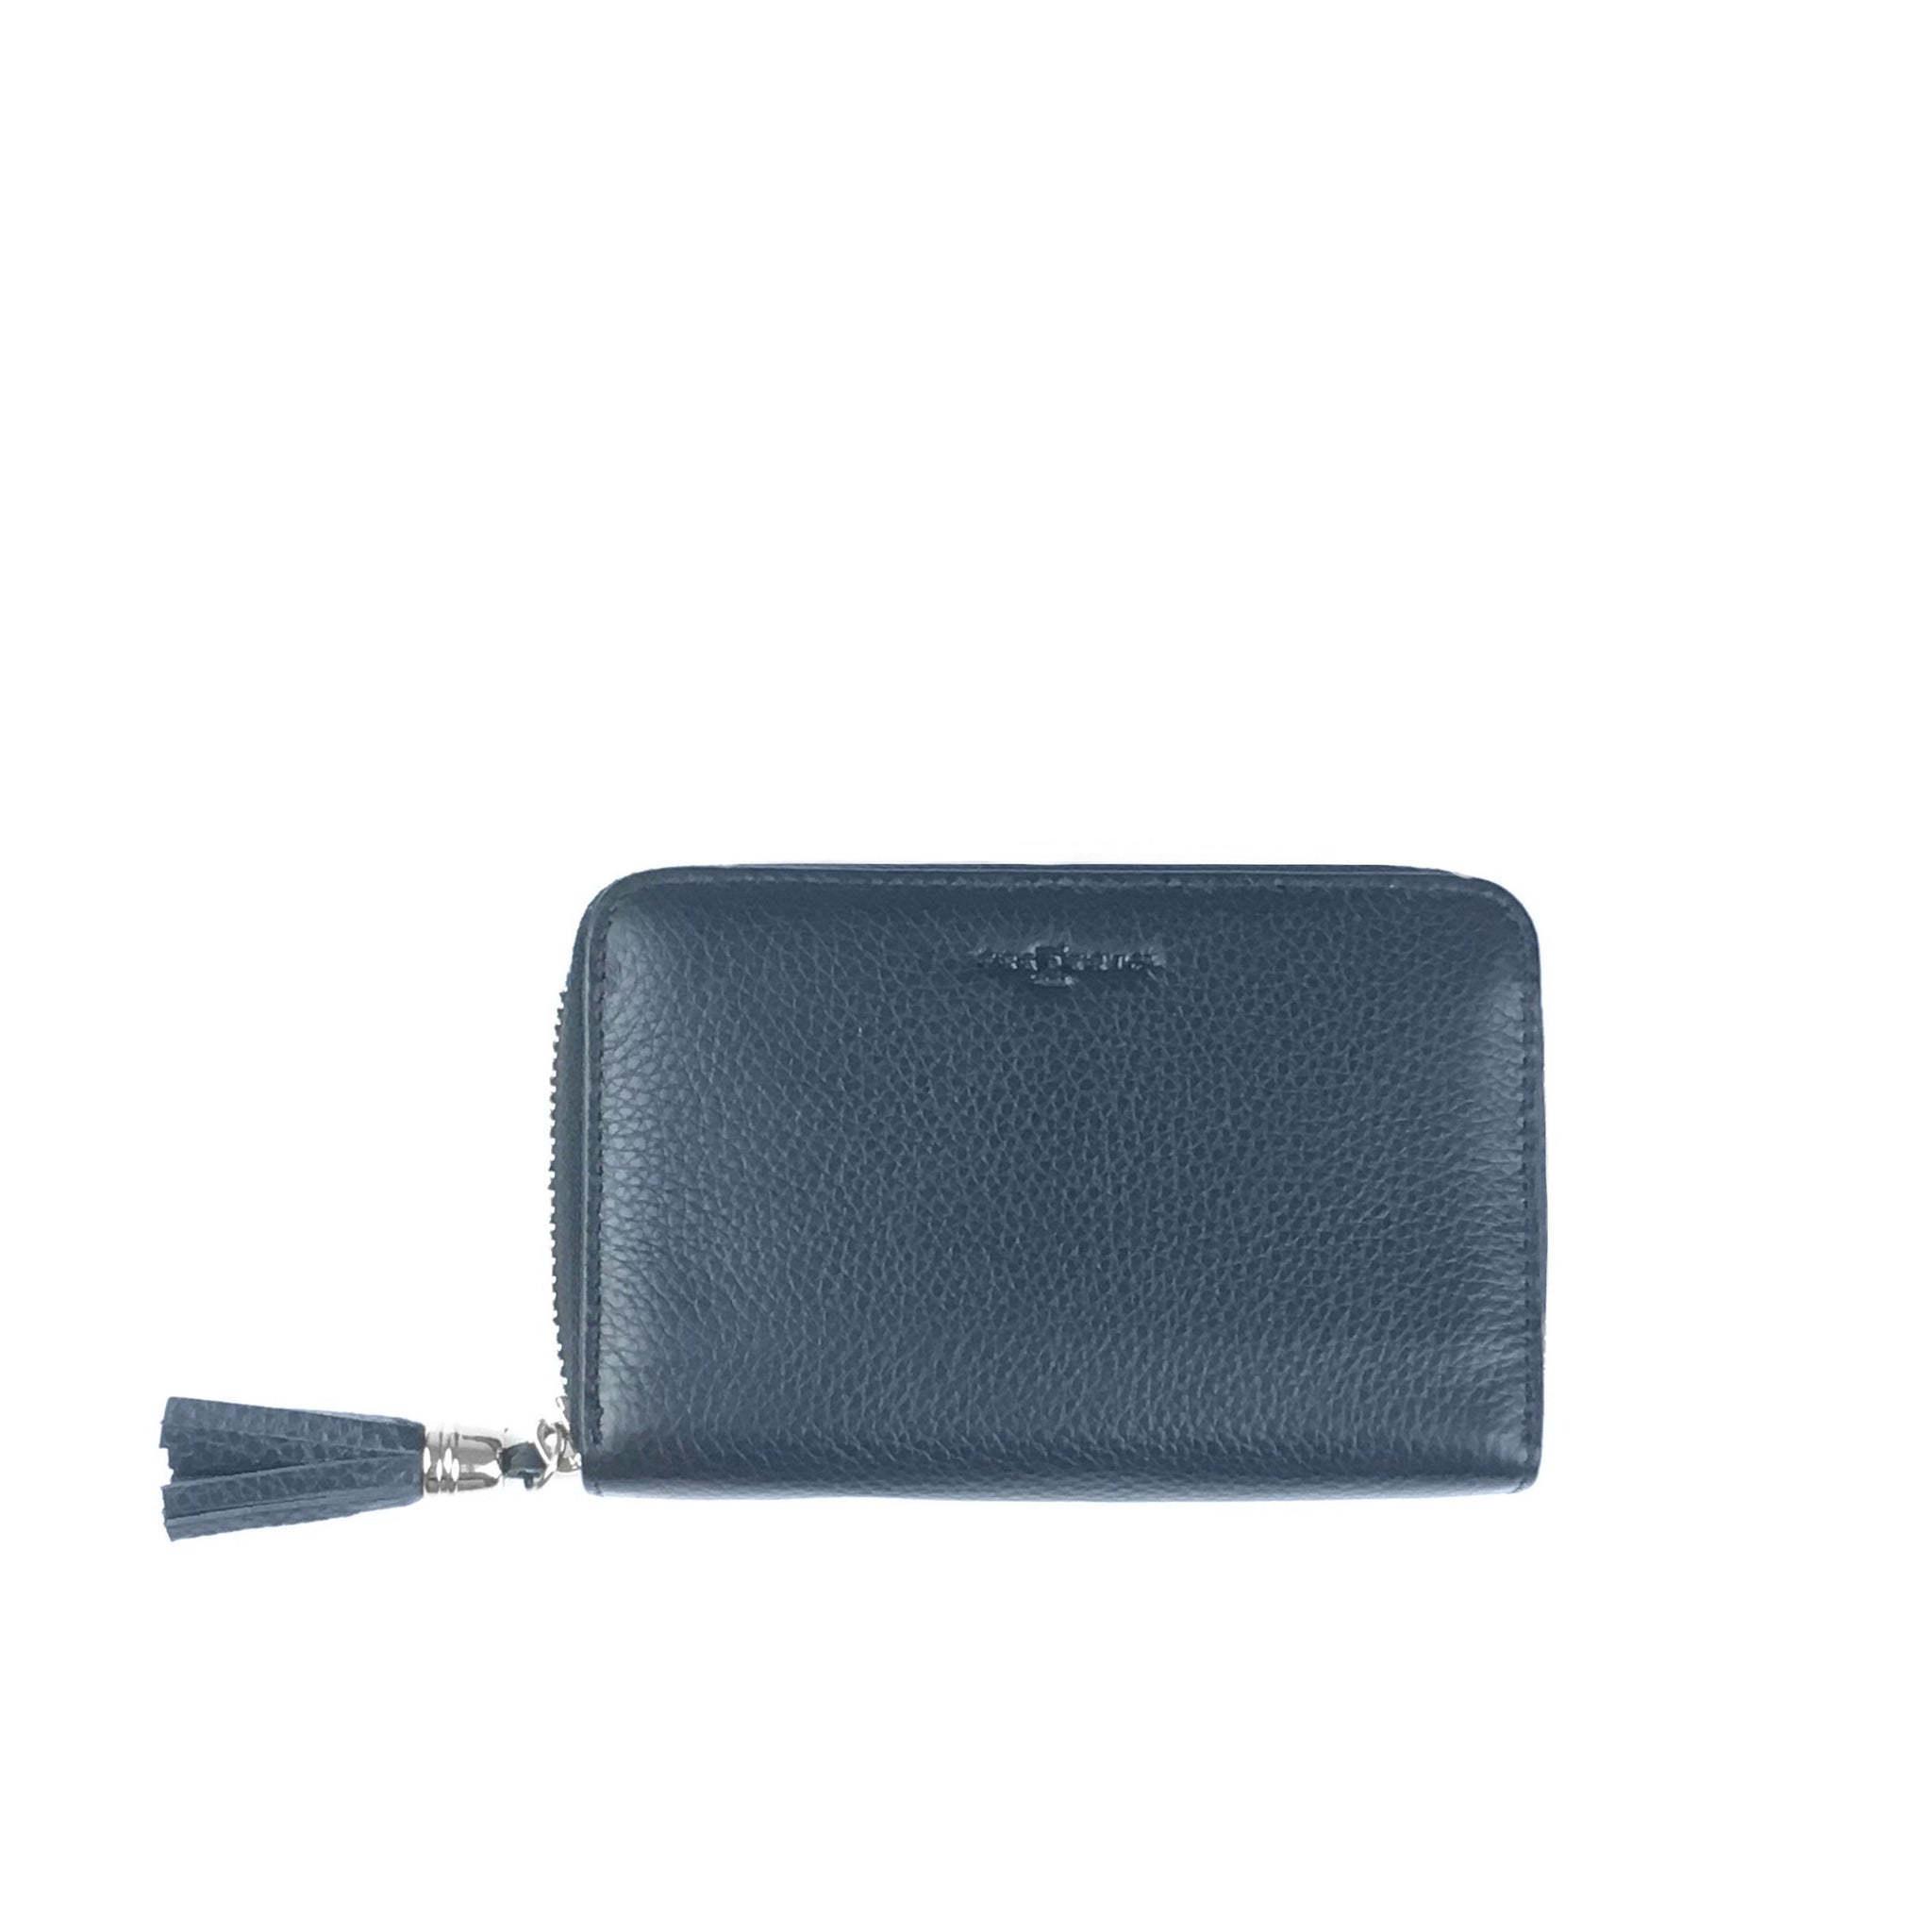 Small Leather wallet, from Paris Saint-Honoré boutique – Obilis Paris